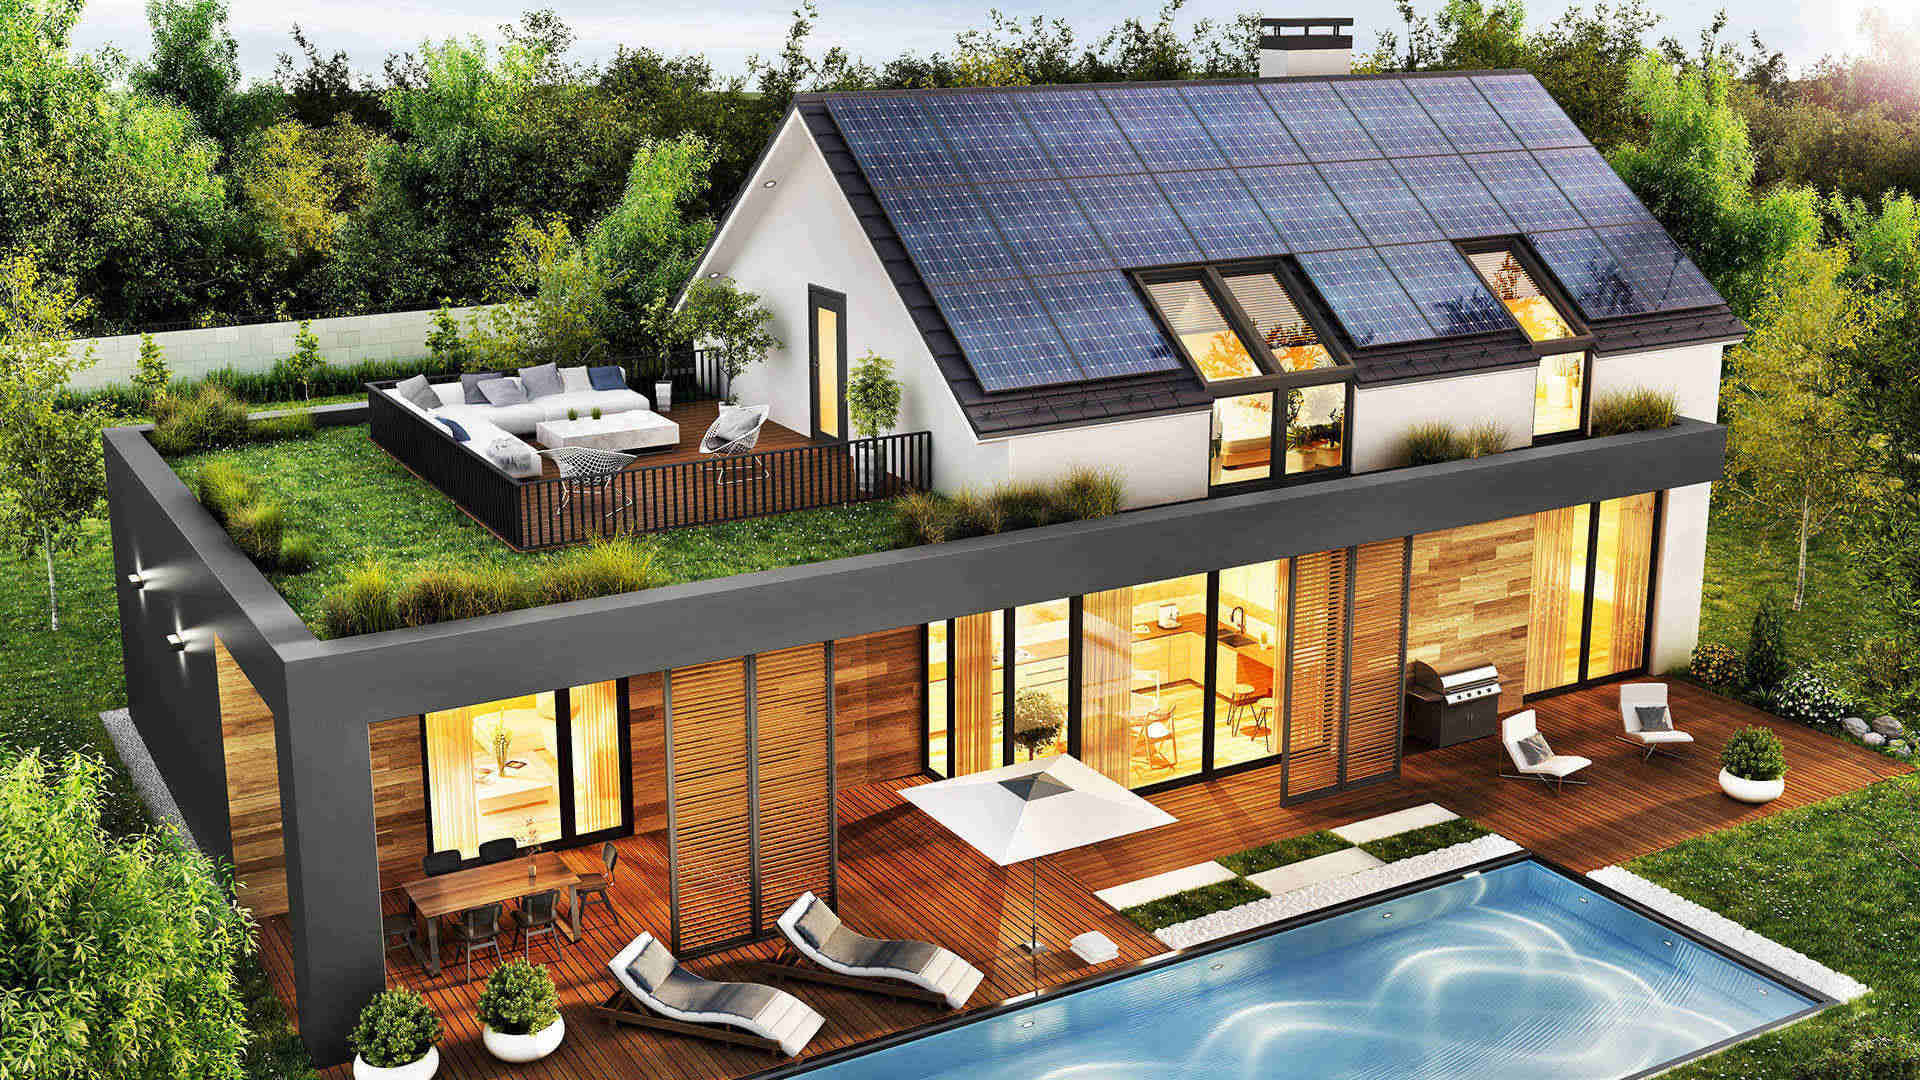 nowoczesny piętrowy dom z panelami fotowoltaicznymi -  w 2021